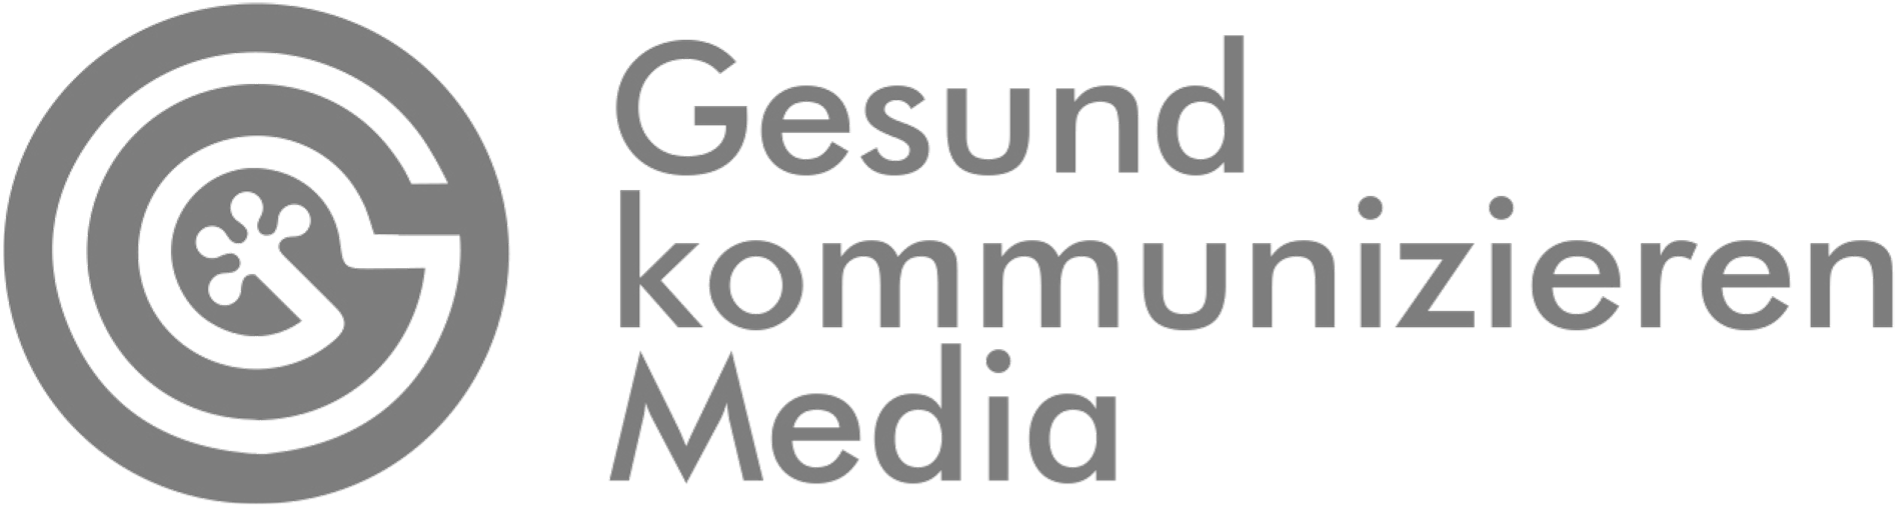 Gesund kommunizieren Media - Logo Grau